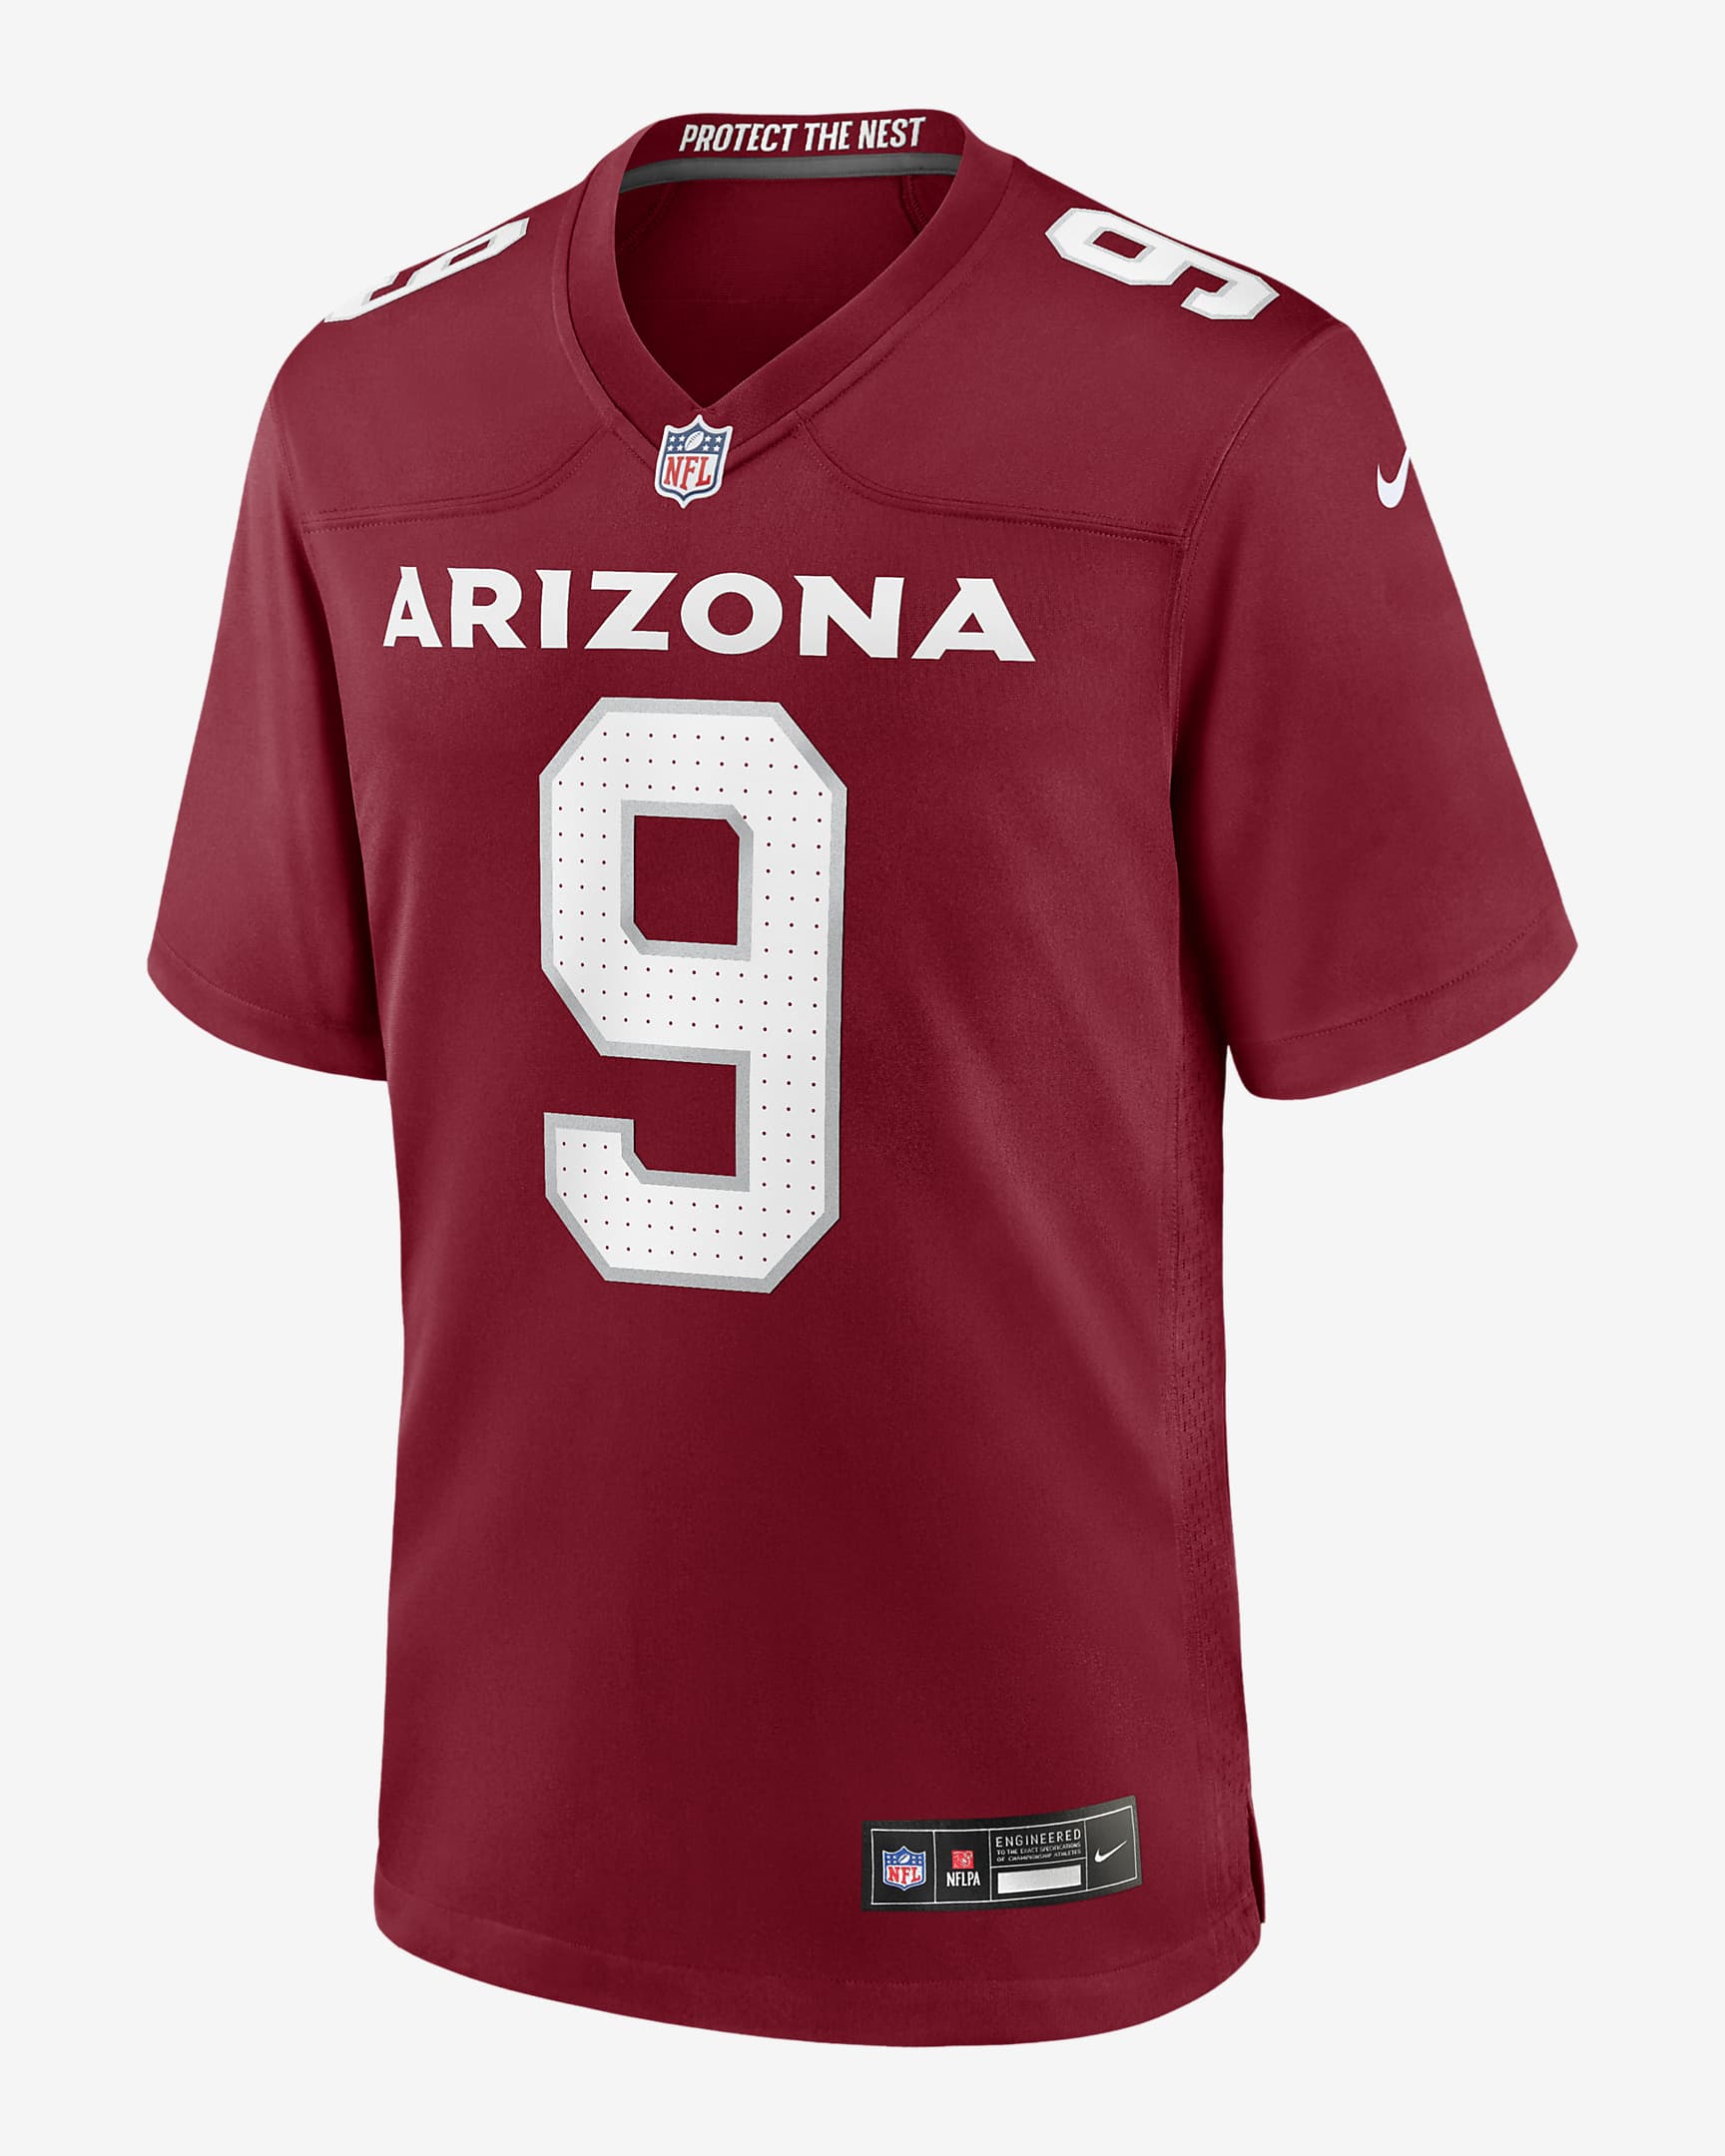 Isaiah Simmons Arizona Cardinals Men's Nike NFL Game Football Jersey ...